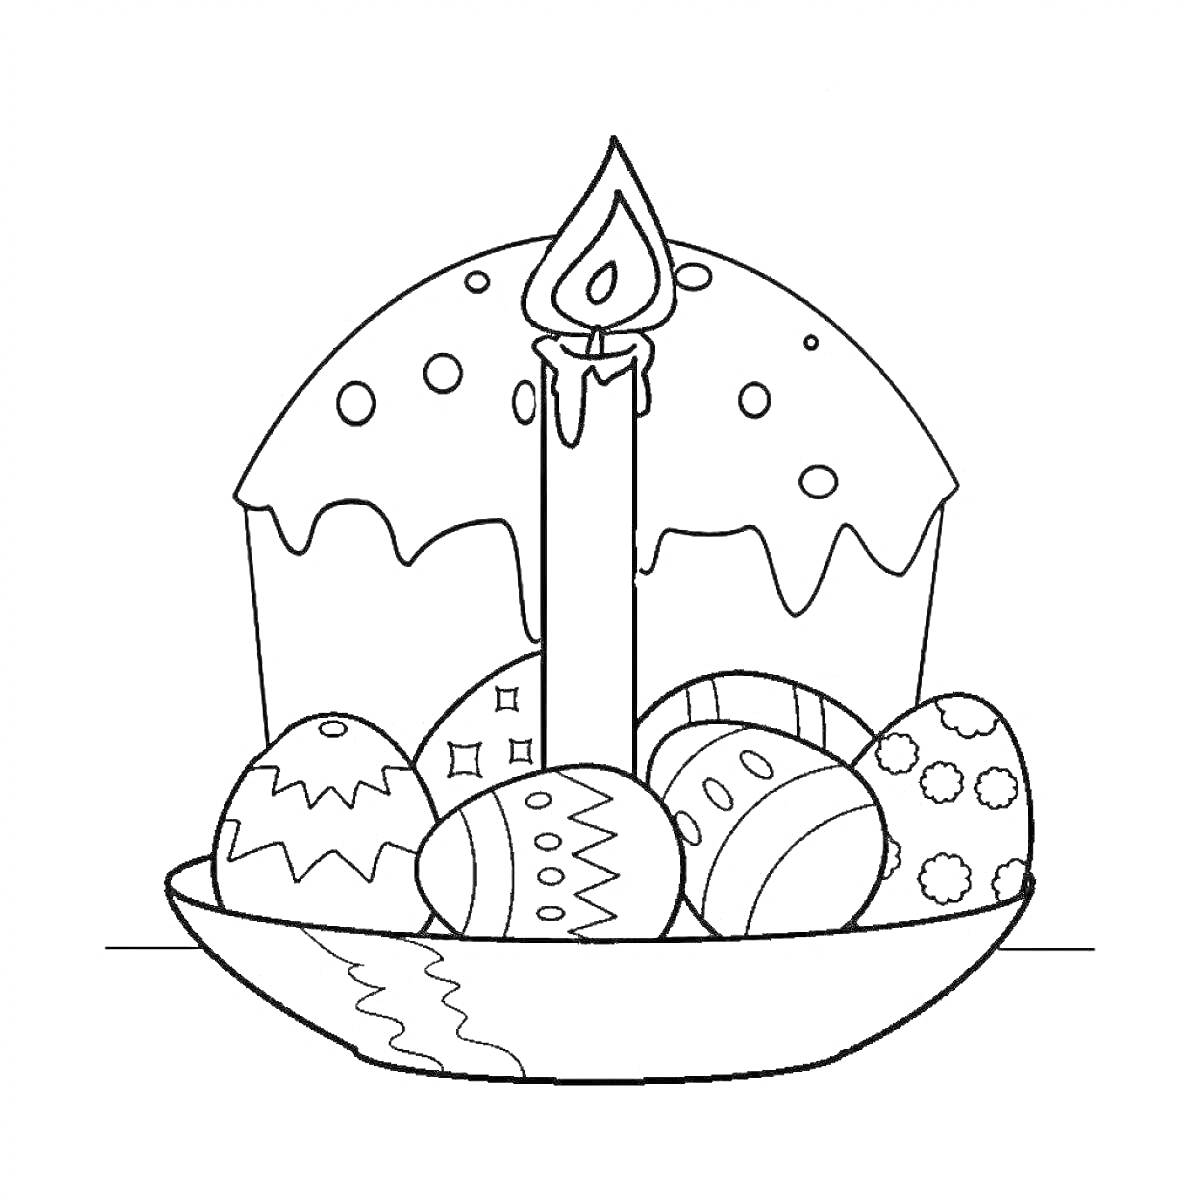 Раскраска Пасхальный кулич с глазурью, свеча и пасхальные яйца в тарелке